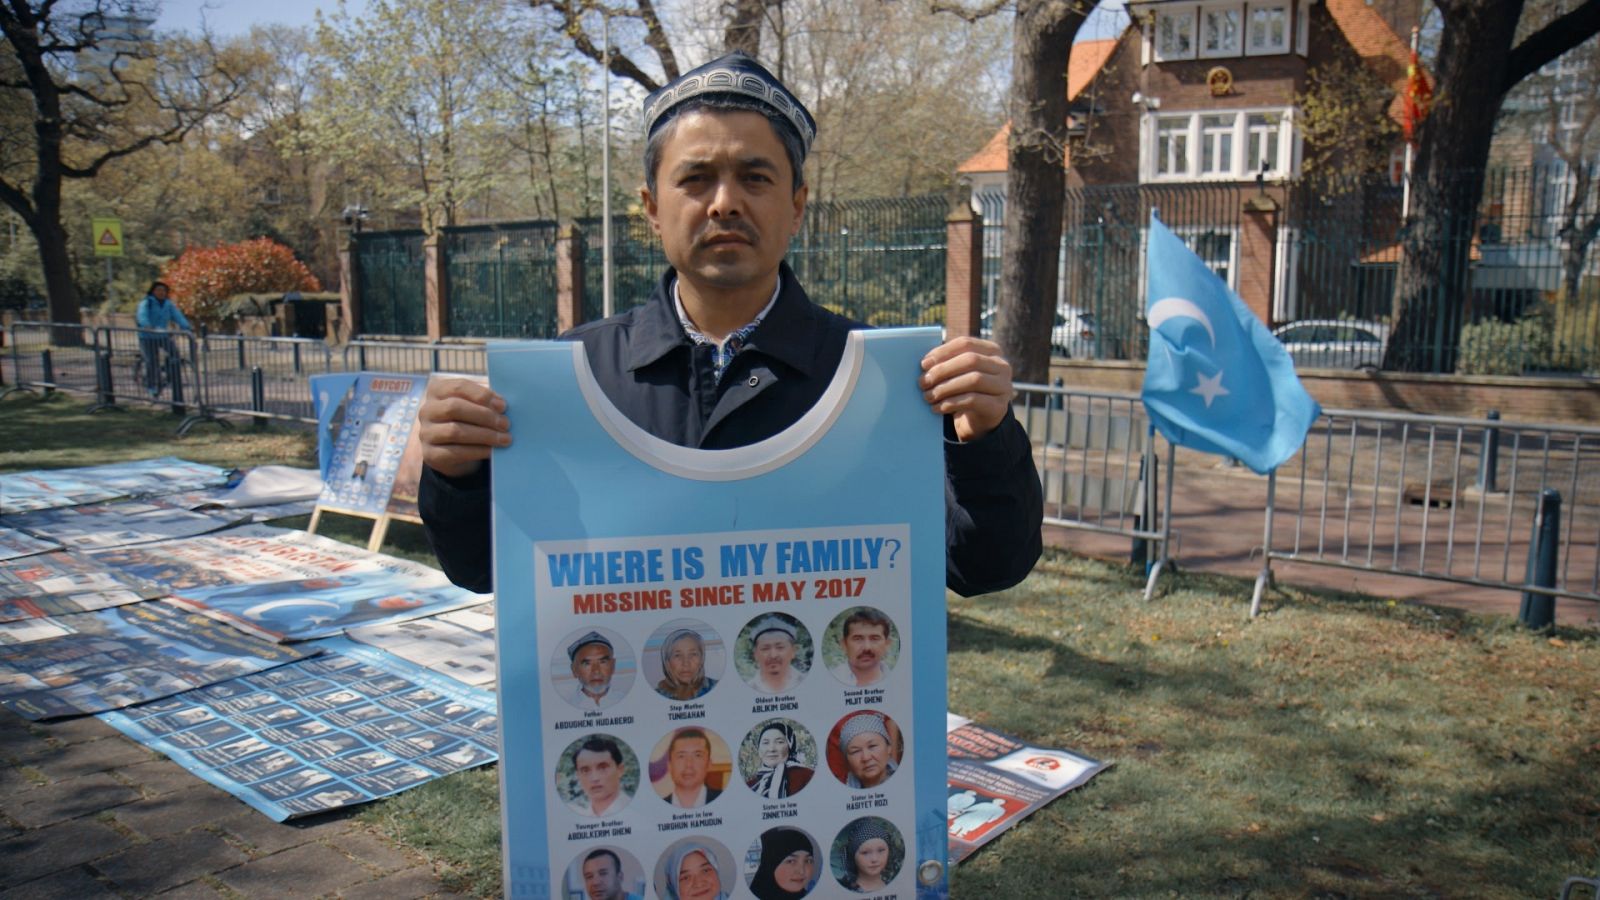 El ciudadano uigur Abdurehim Gheni se manifiesta contra el régimen chino en La Haya.